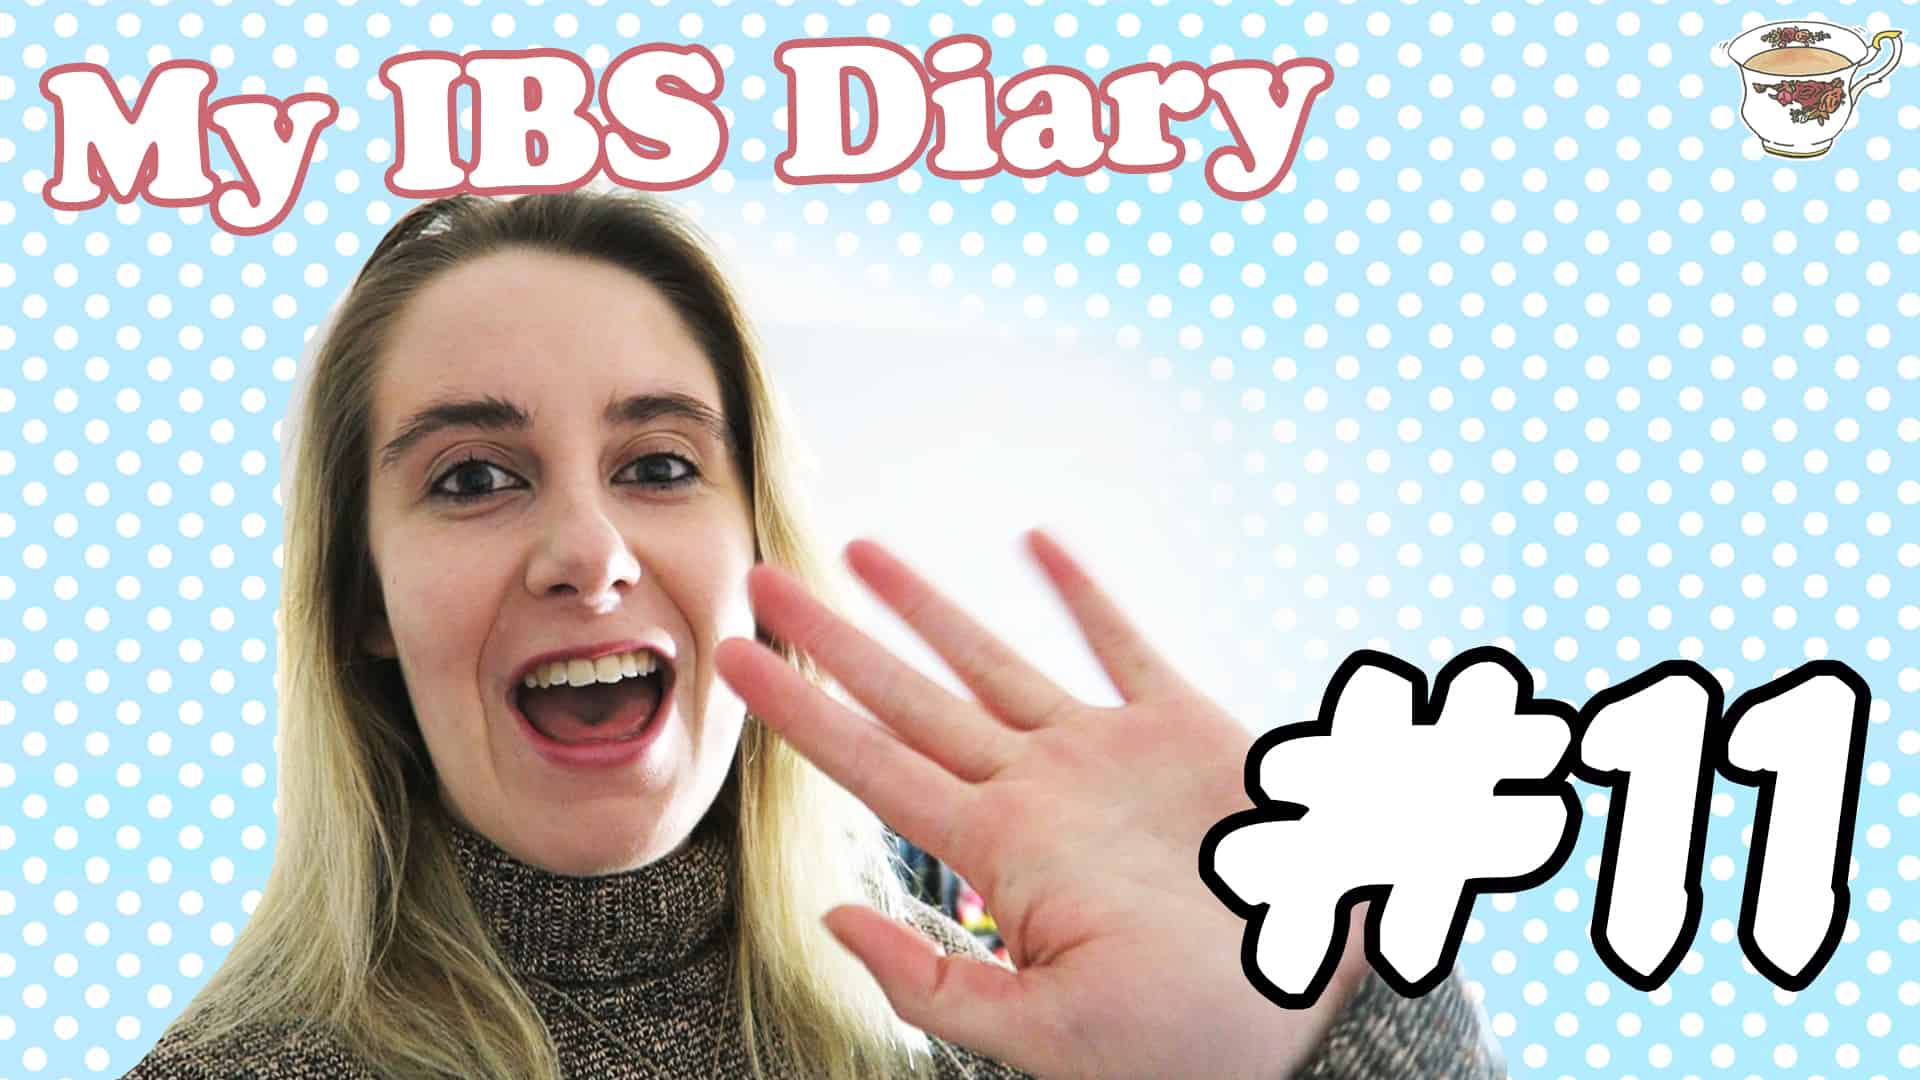 ibs diary week 11